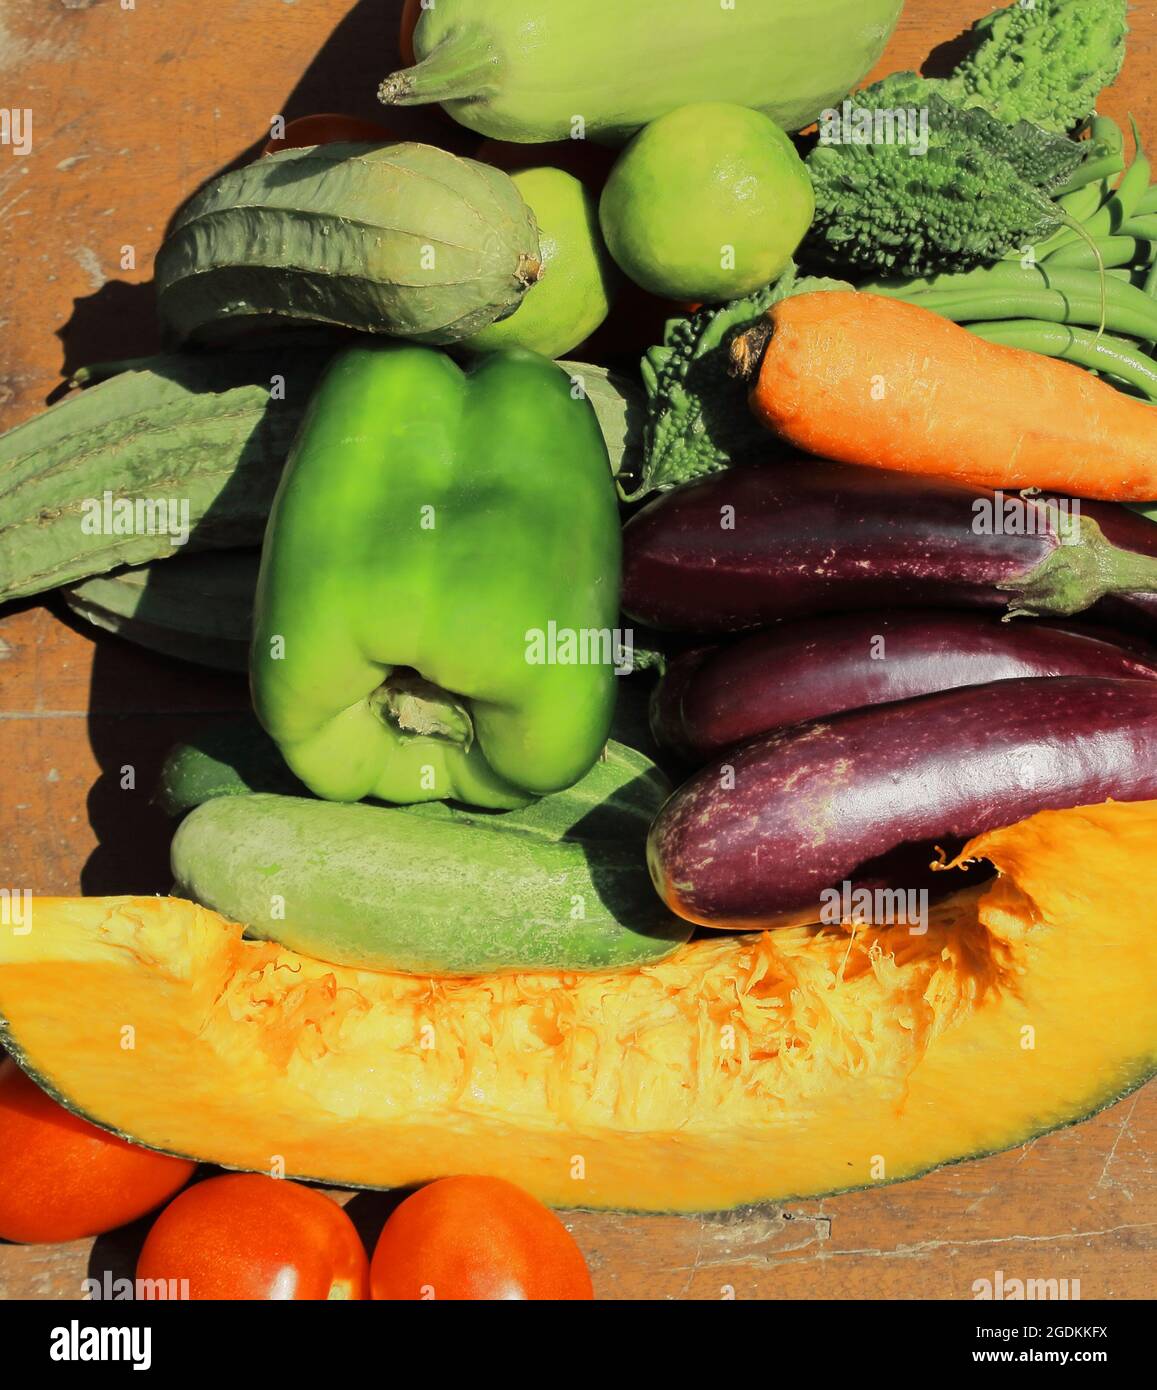 verduras tropicales frescas para comer de forma saludable Foto de stock